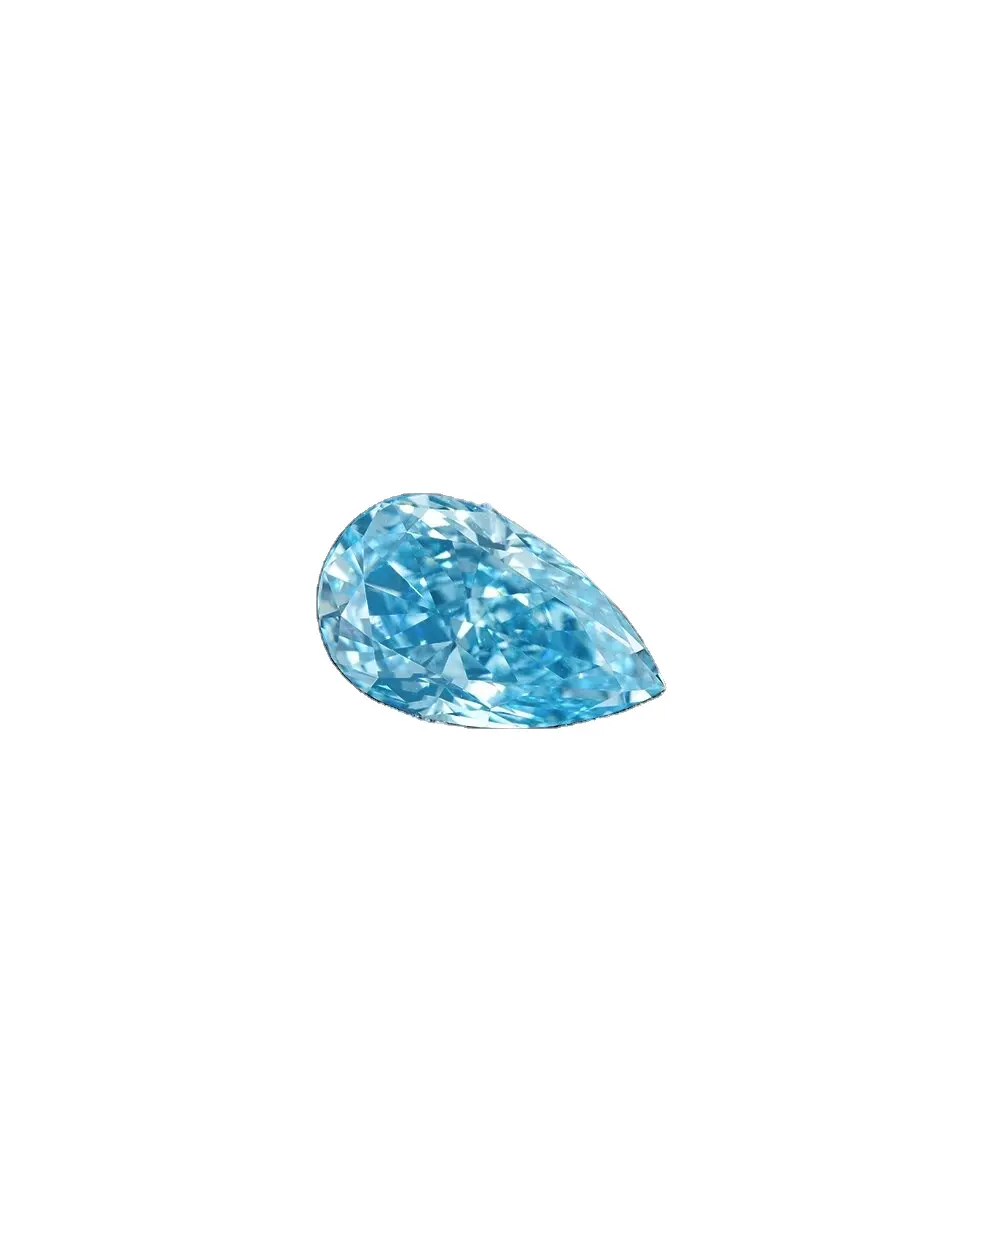 1.7-Diamante coltivato in laboratorio da 5,22 ct, taglio a pera, VVS2, VS1, 2EX,VG, IGI SH, blu intenso fantasia